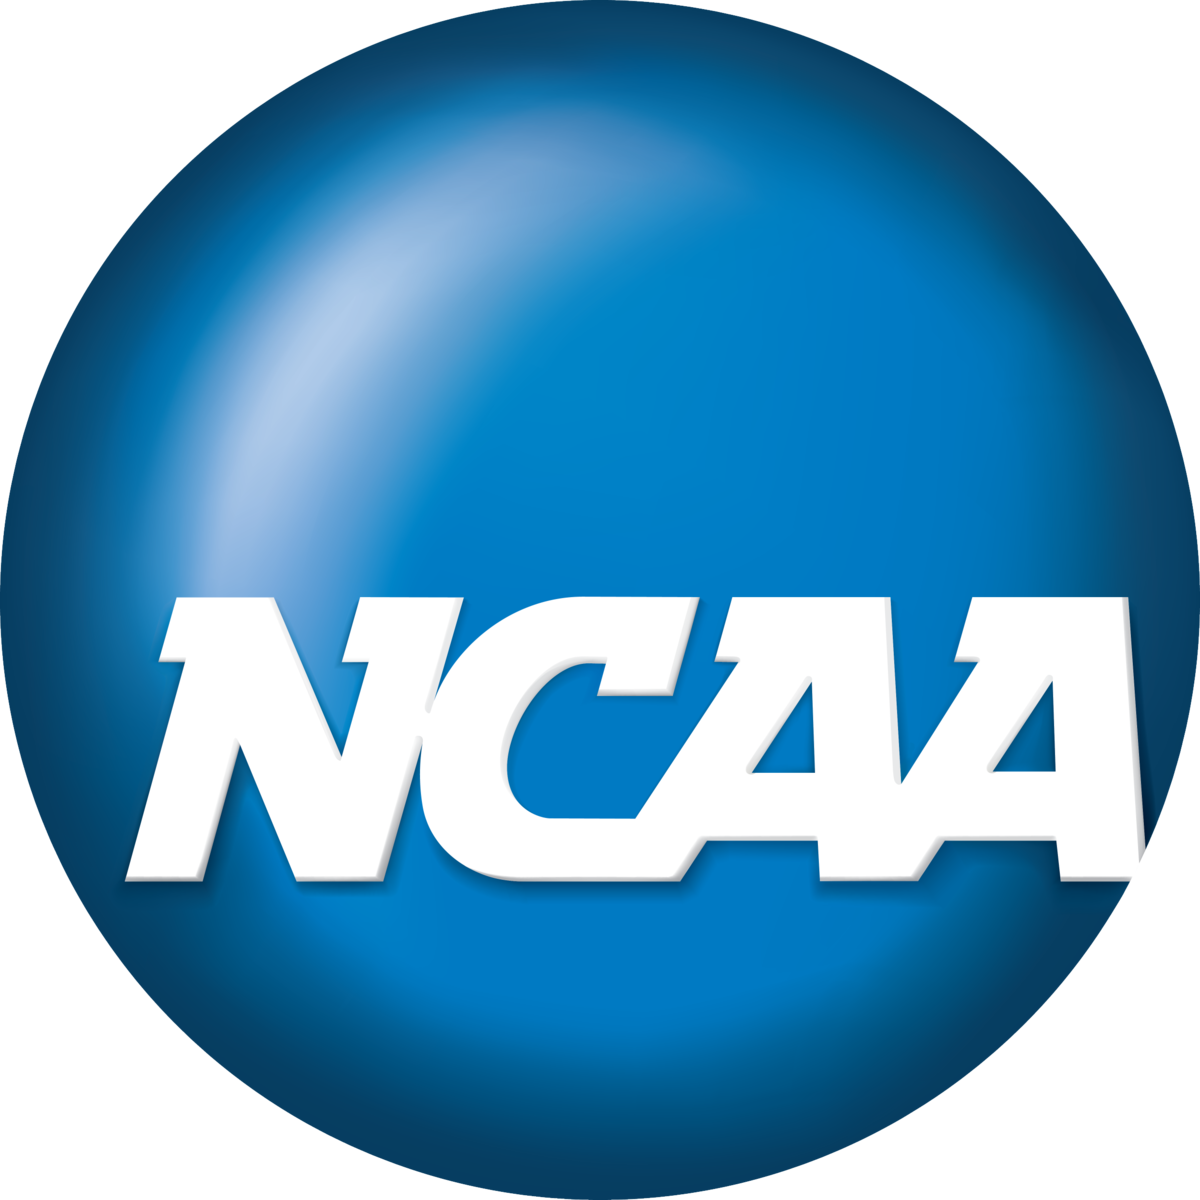 NCAA+logo+from+Wikimedia+Commons